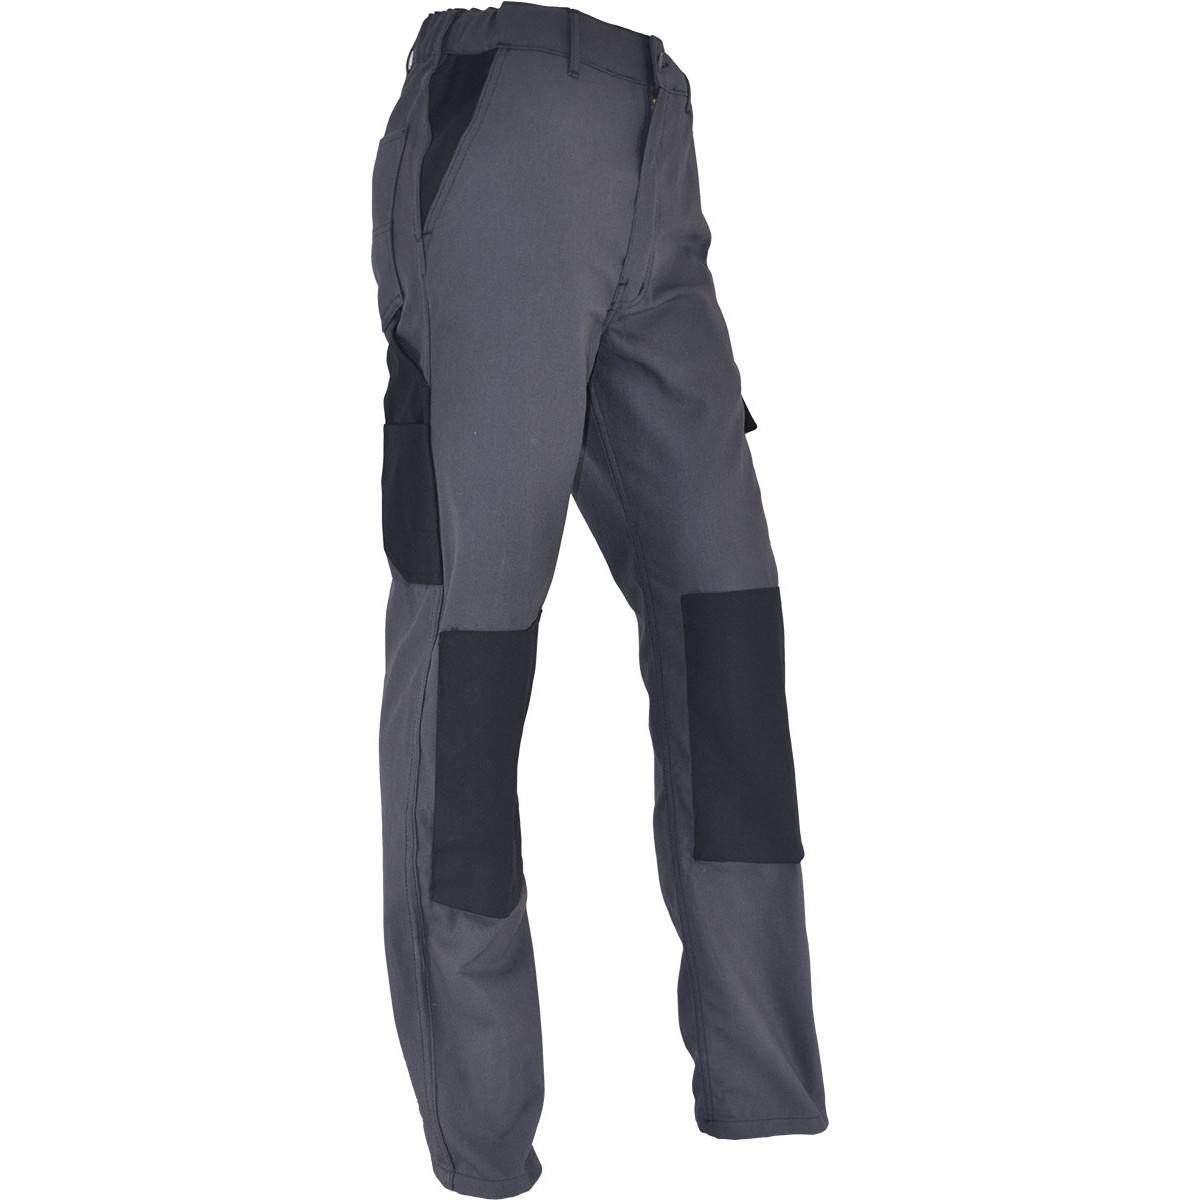 PMPC pantaloni da lavoro comfort taglia 44, grigio antracite